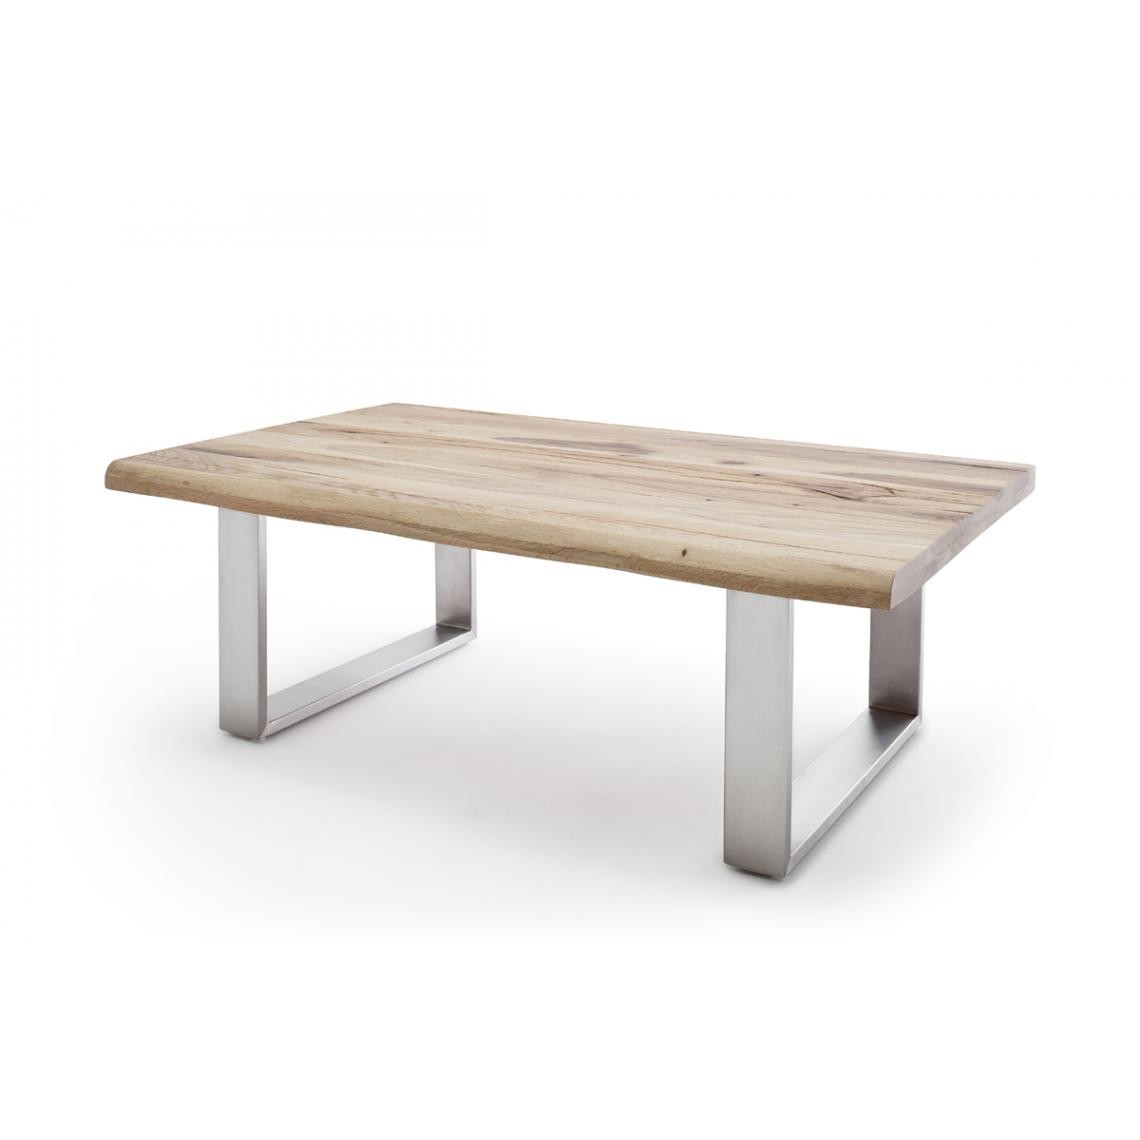 Pegane - Table basse en chêne noueux massif - L120 x H43 x P75 cm - Tables basses